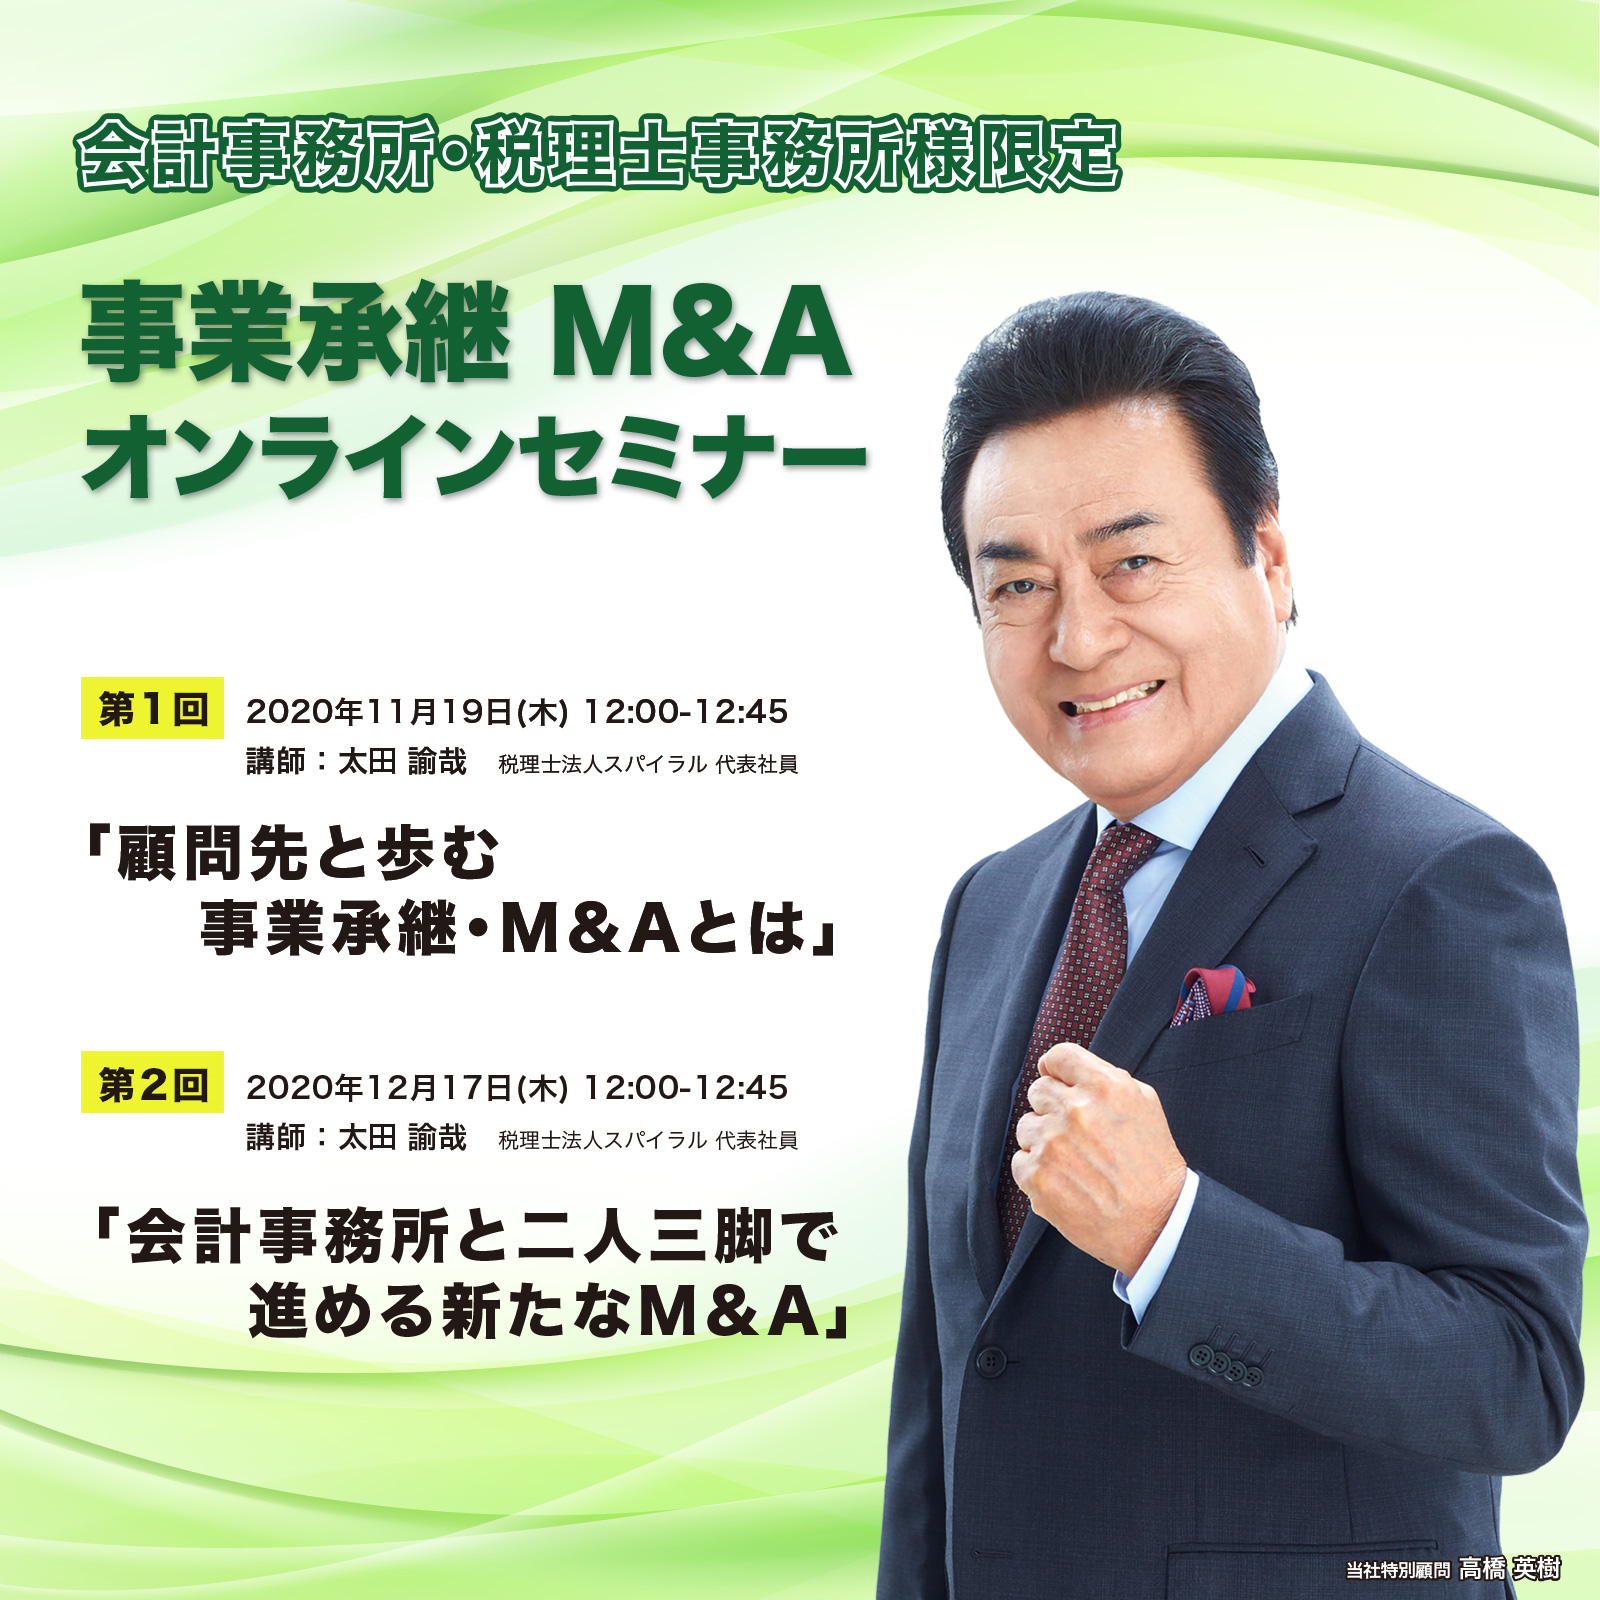 【会計事務所・税理士事務所】事業承継・M&Aオンラインセミナーのご案内